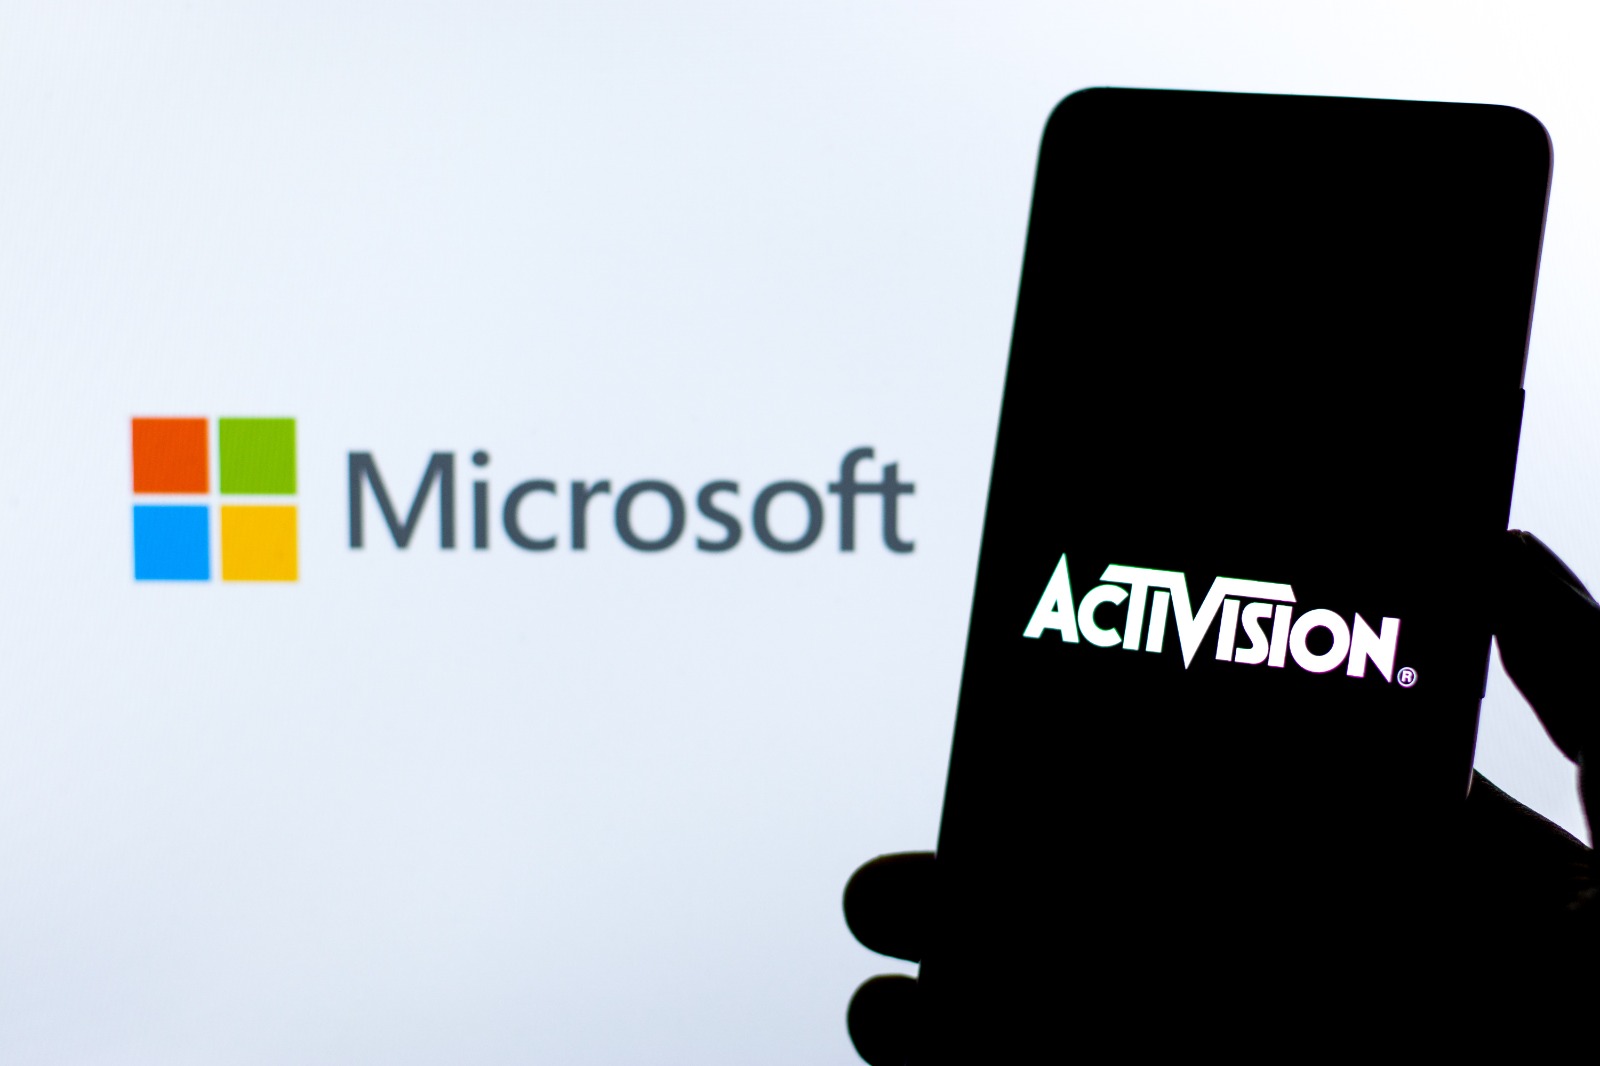 Imagem mostra o logotipo da Microsoft em um telão ao fundo, com um smartphone iluminando o logo da Activision no display